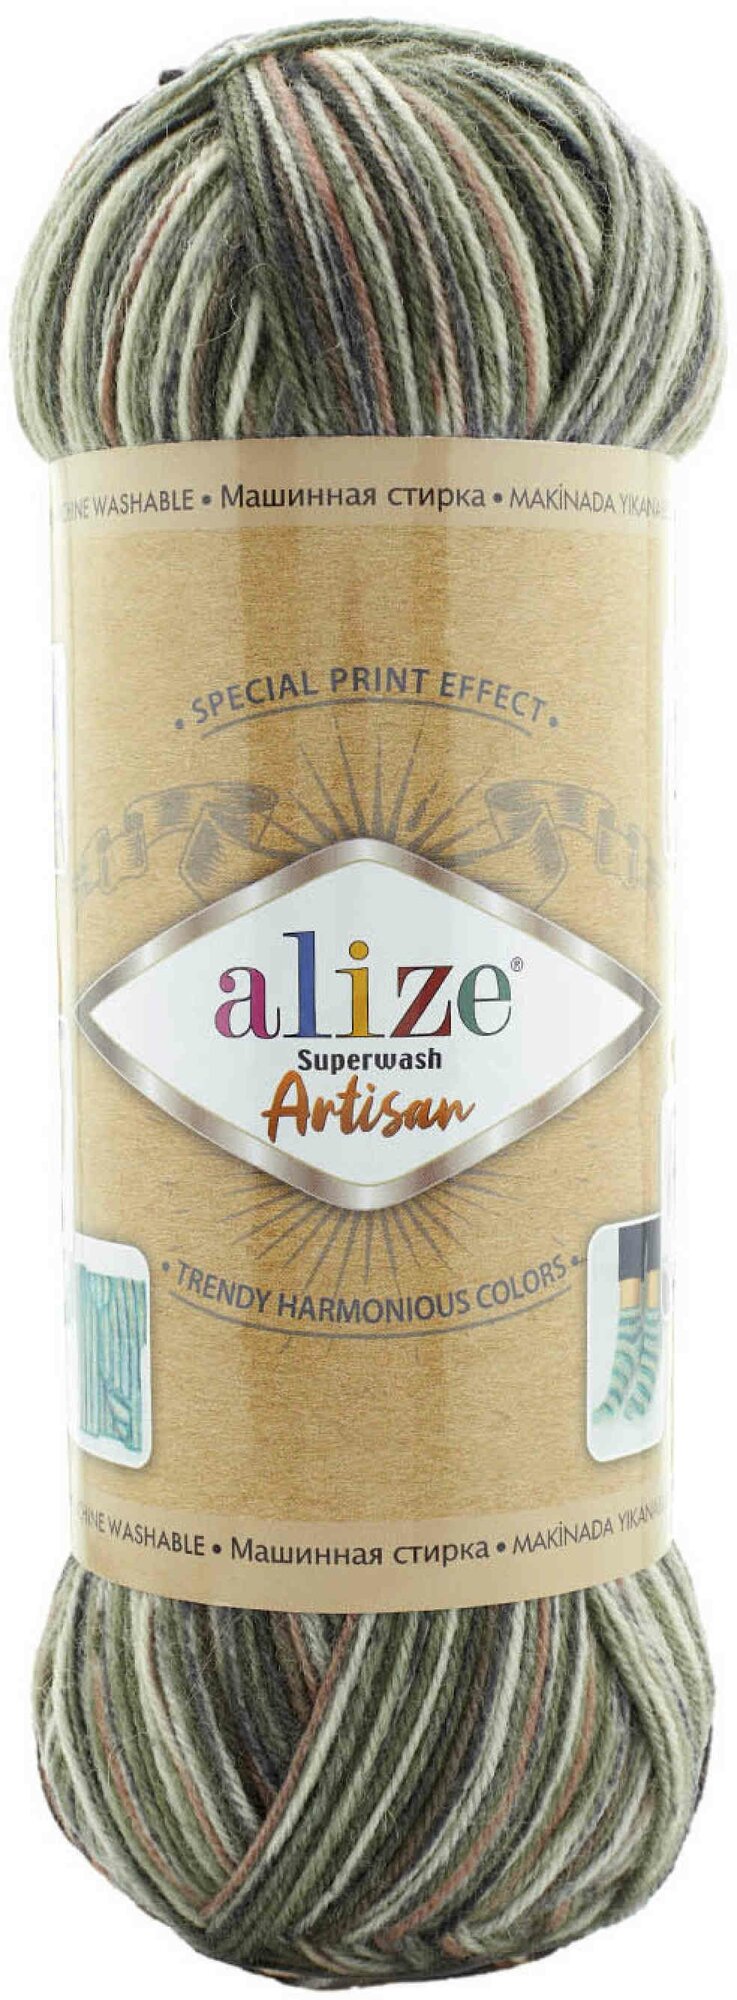 Пряжа Alize Superwash Artisan принт белый-болотный-серый (9014), 75%шерсть/25%полиамид, 420м, 100г, 1шт